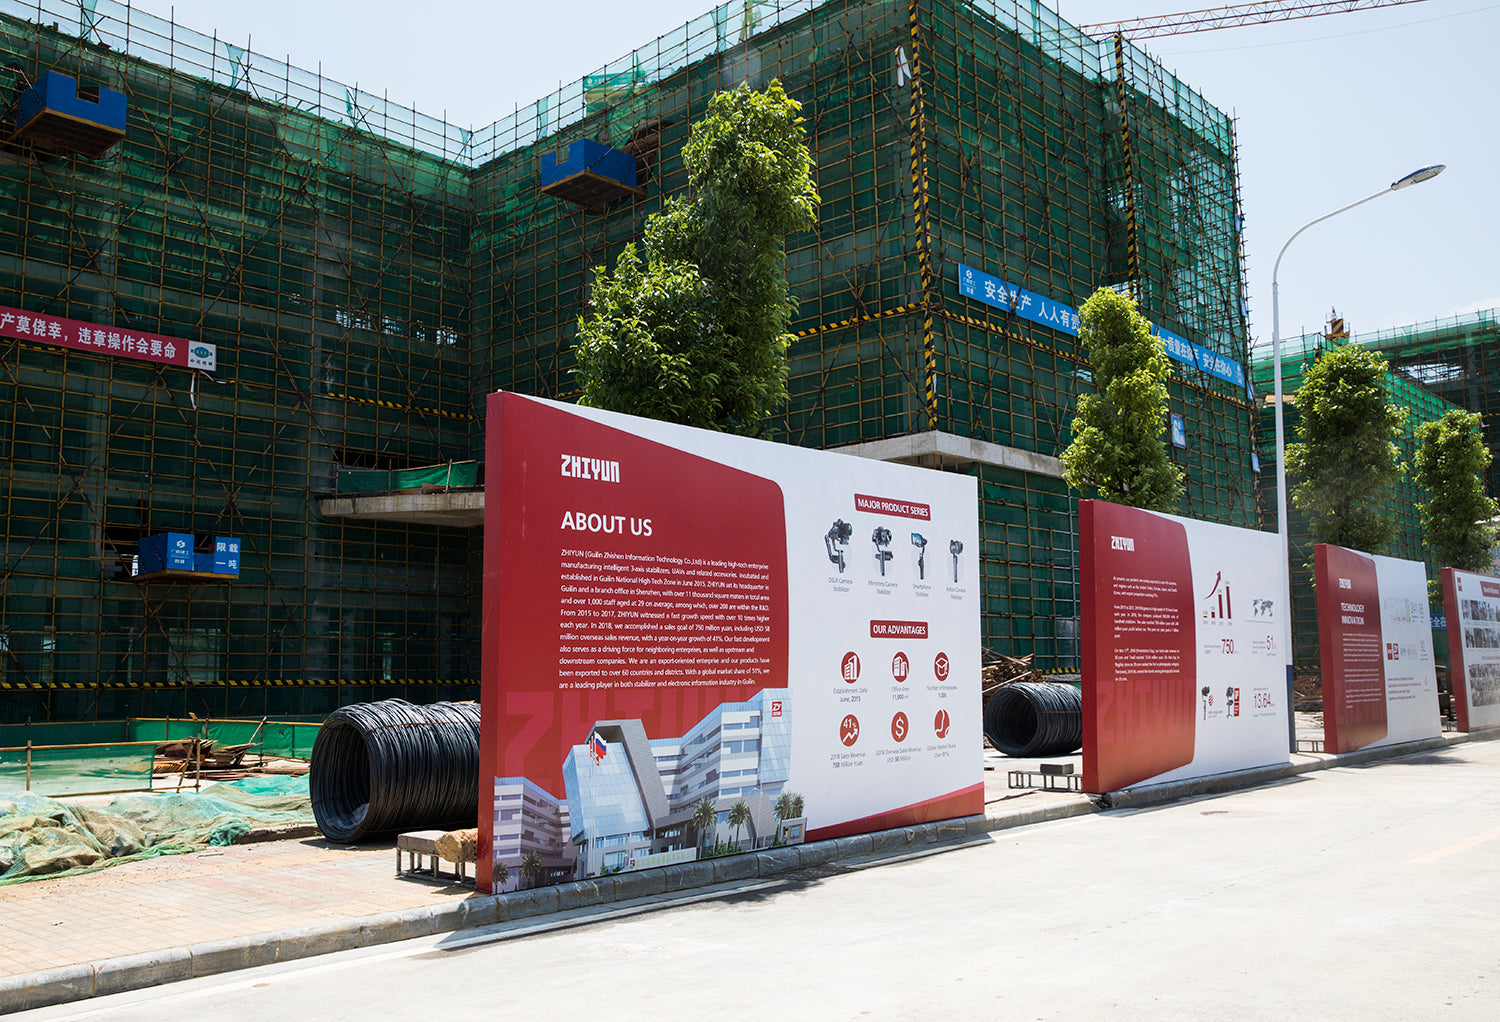 [2日目後半] ZHIYUNが桂林市に建設中の本社と工場の見学